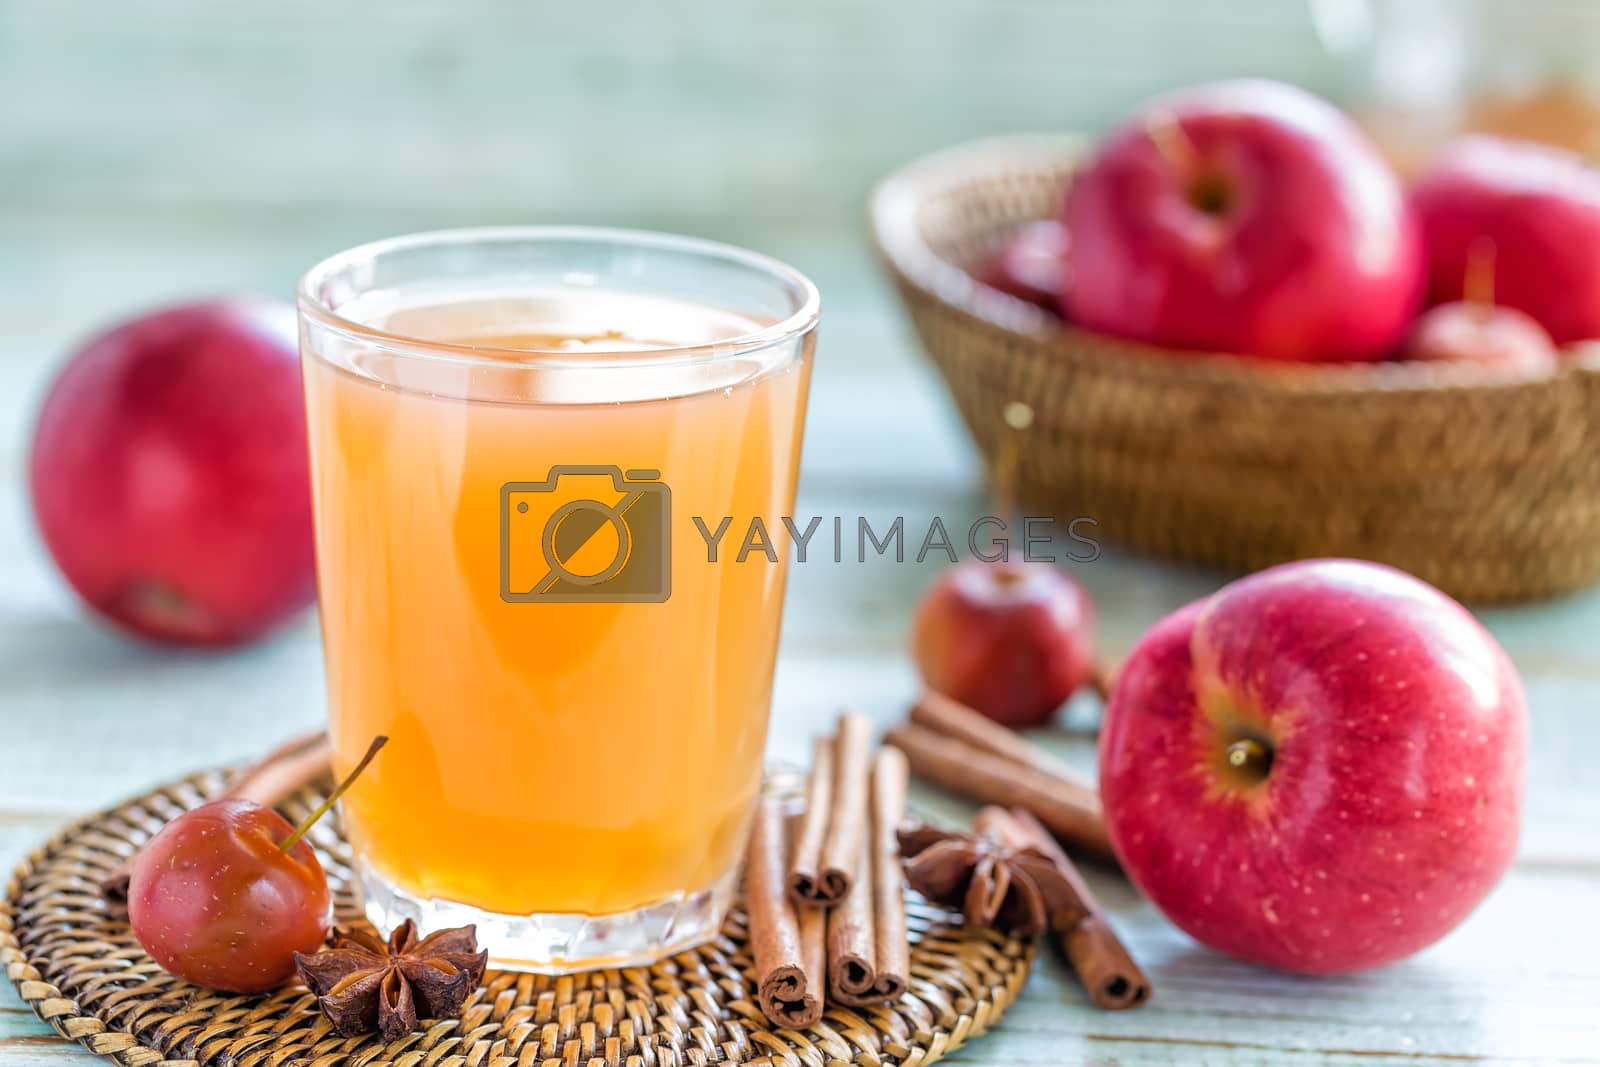 Royalty free image of Apple juice by yelenayemchuk